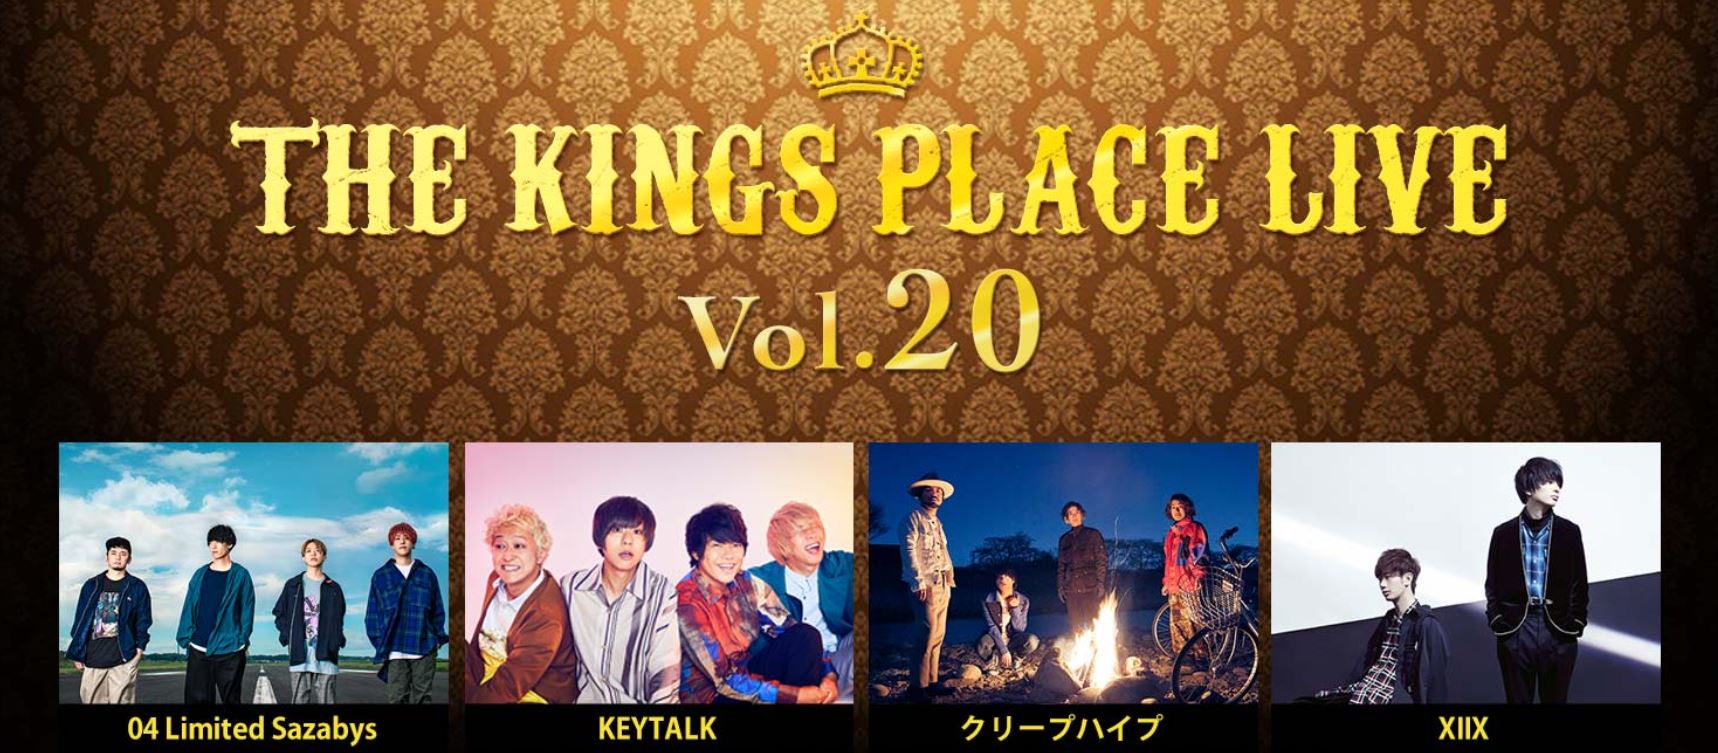 【神奈川】J-WAVE THE KINGS PLACE LIVE Vol.20 (横浜アリーナ)